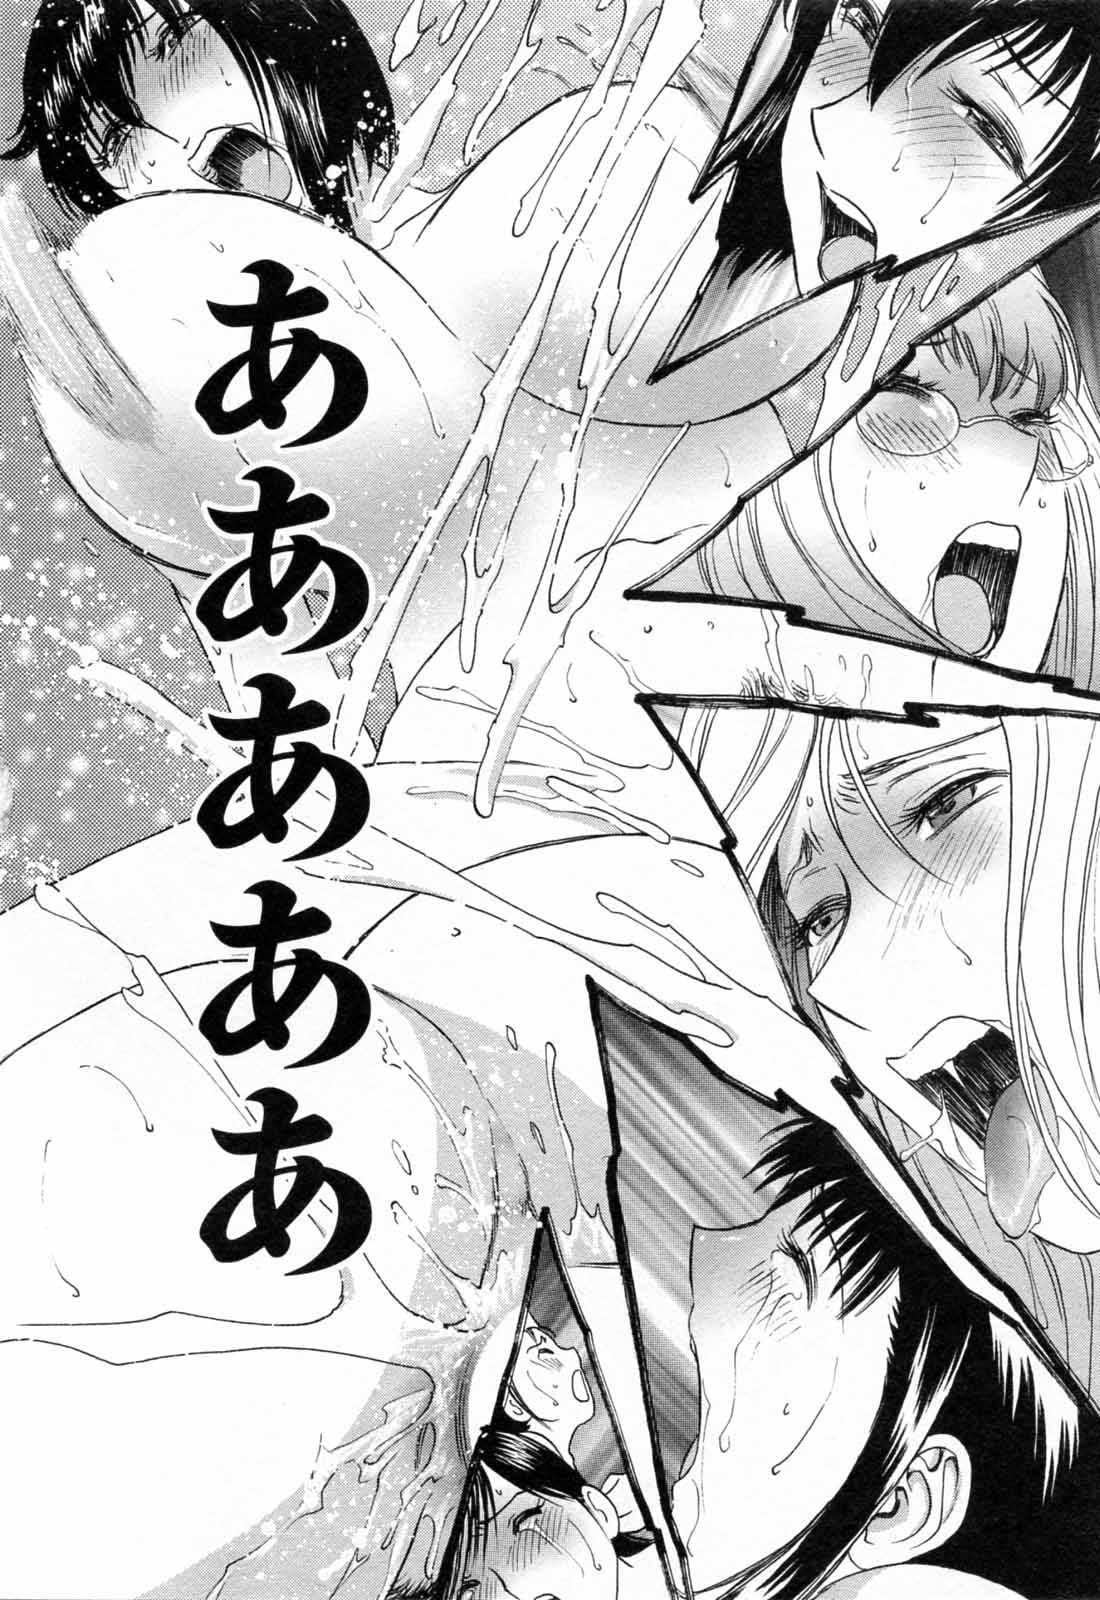 [Hidemaru] Mo-Retsu! Boin Sensei (Boing Boing Teacher) Vol.5 91